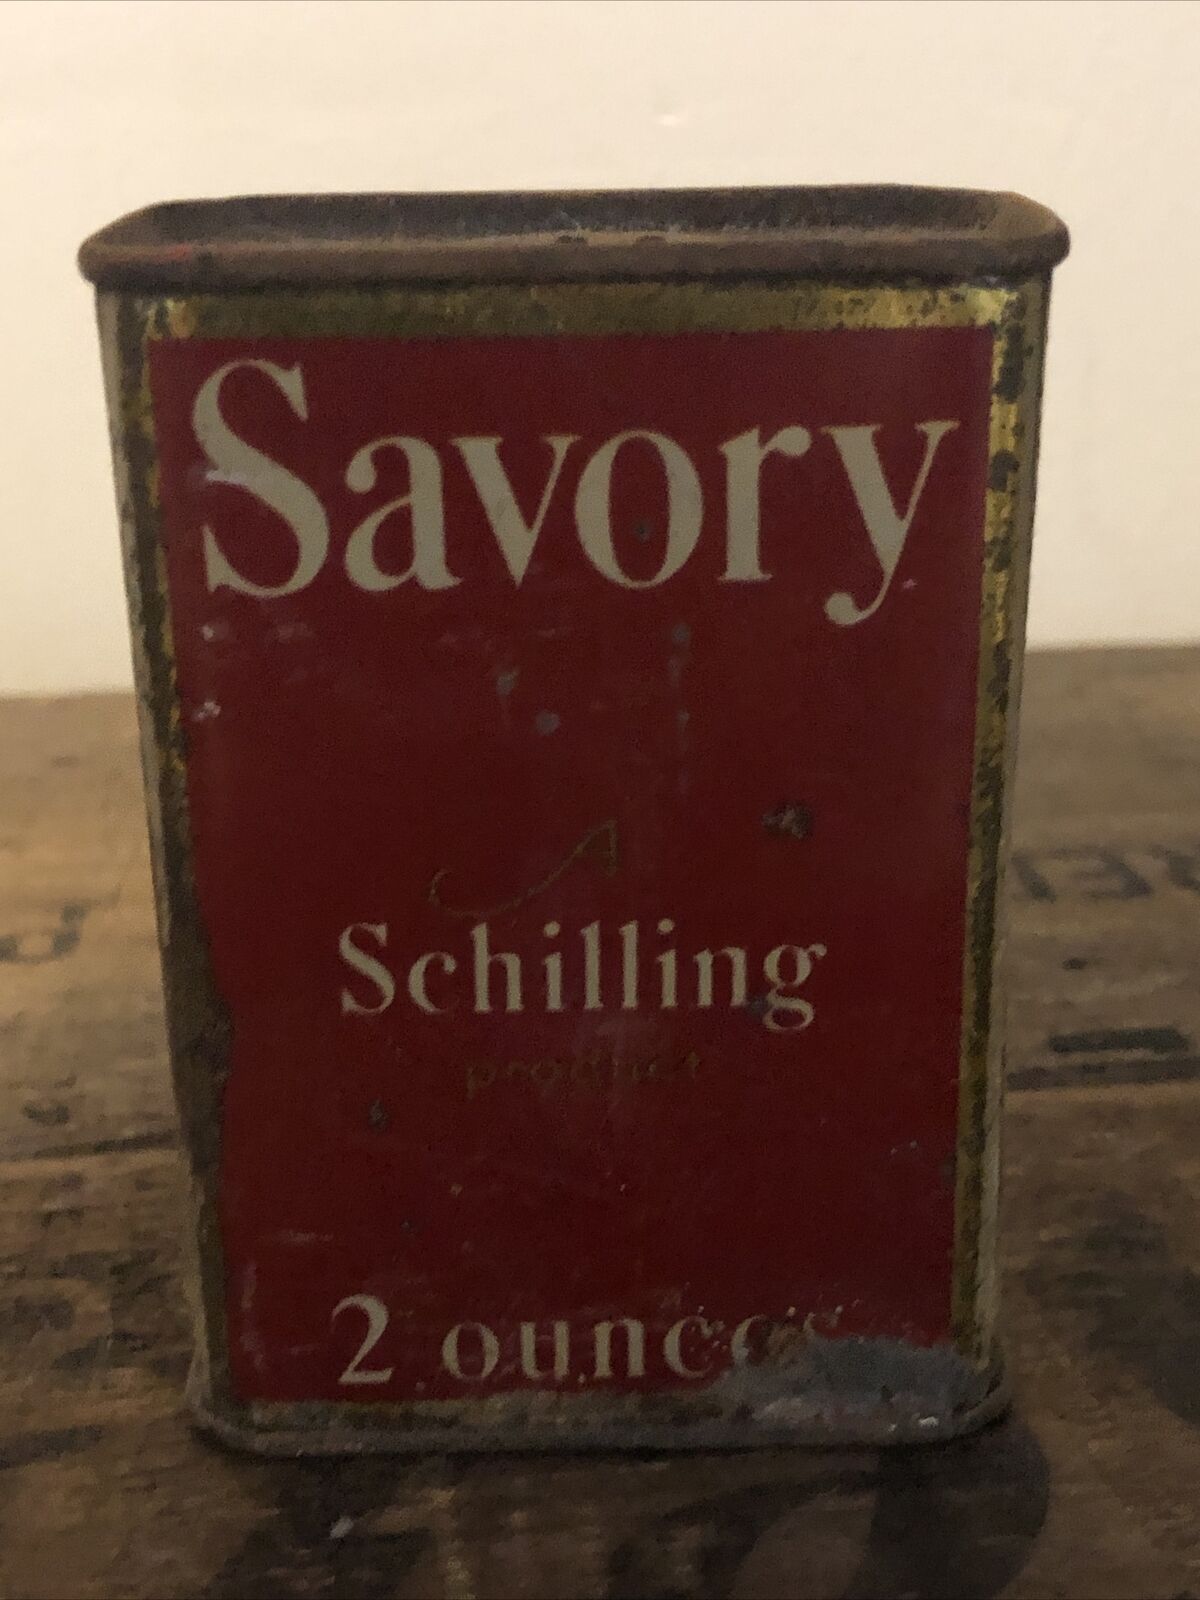 Vintage 1930s Savory Schilling 2 ounces Tin